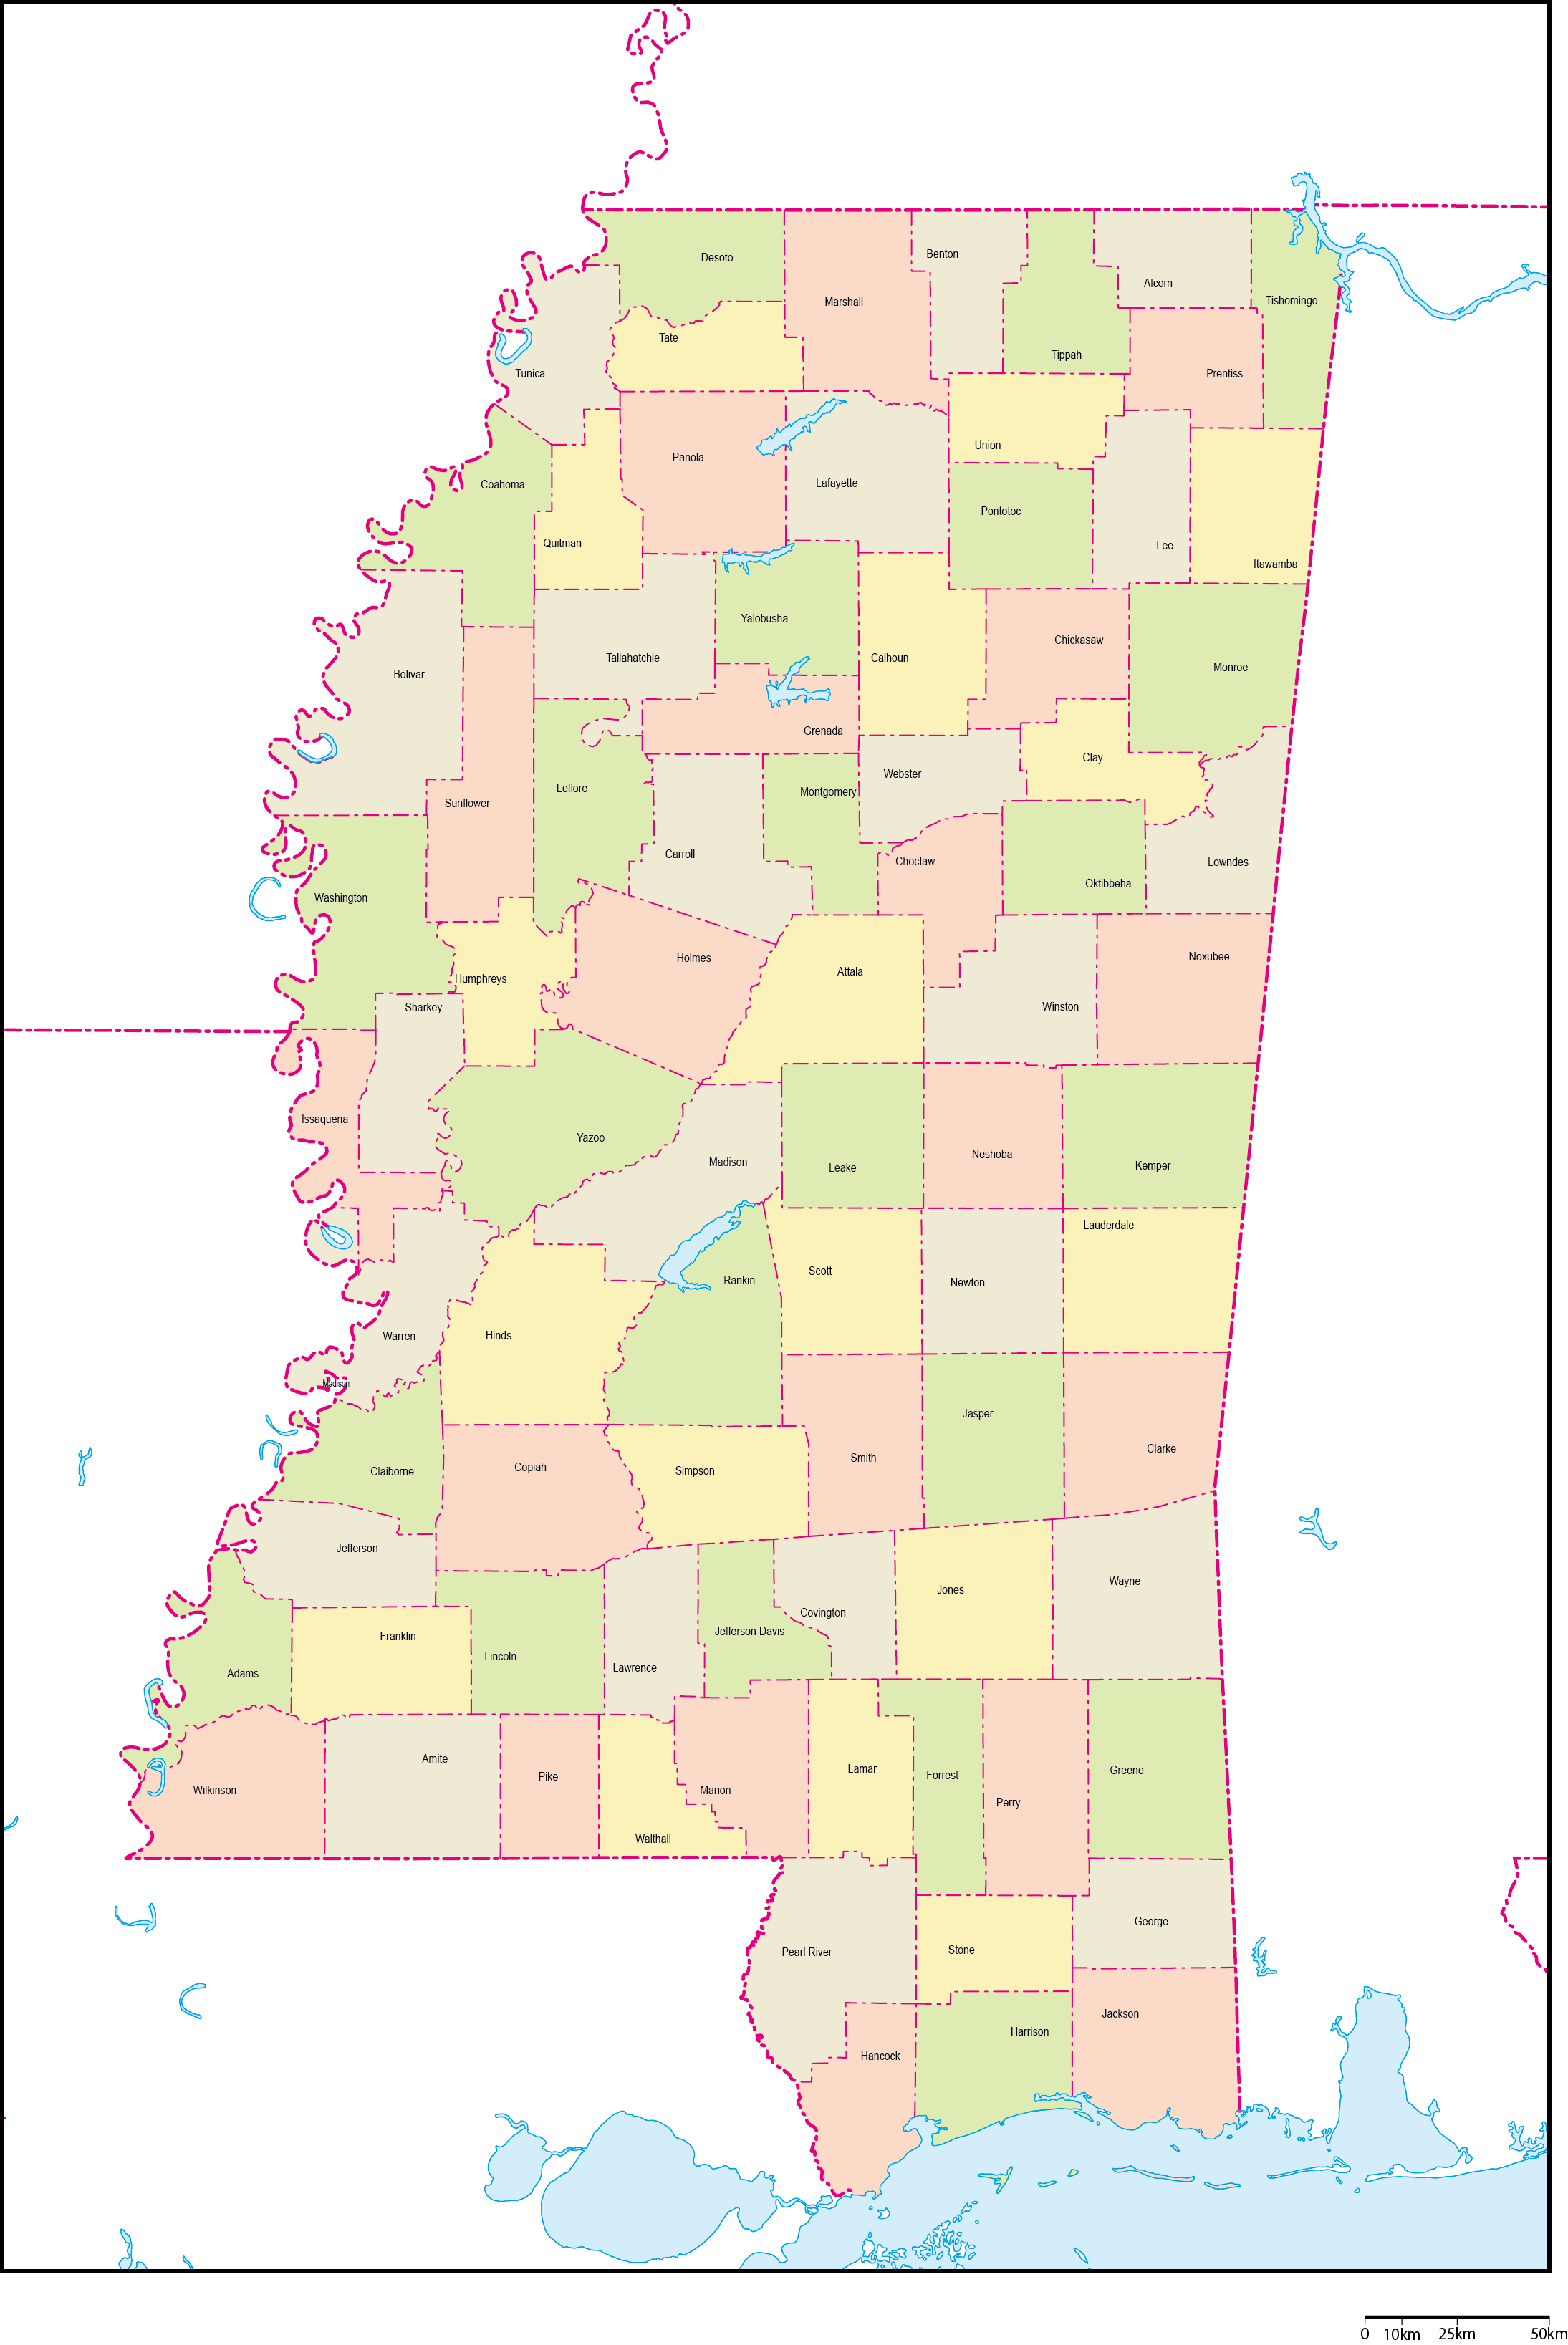 ミシシッピ州郡色分け地図郡名あり(英語)フリーデータの画像